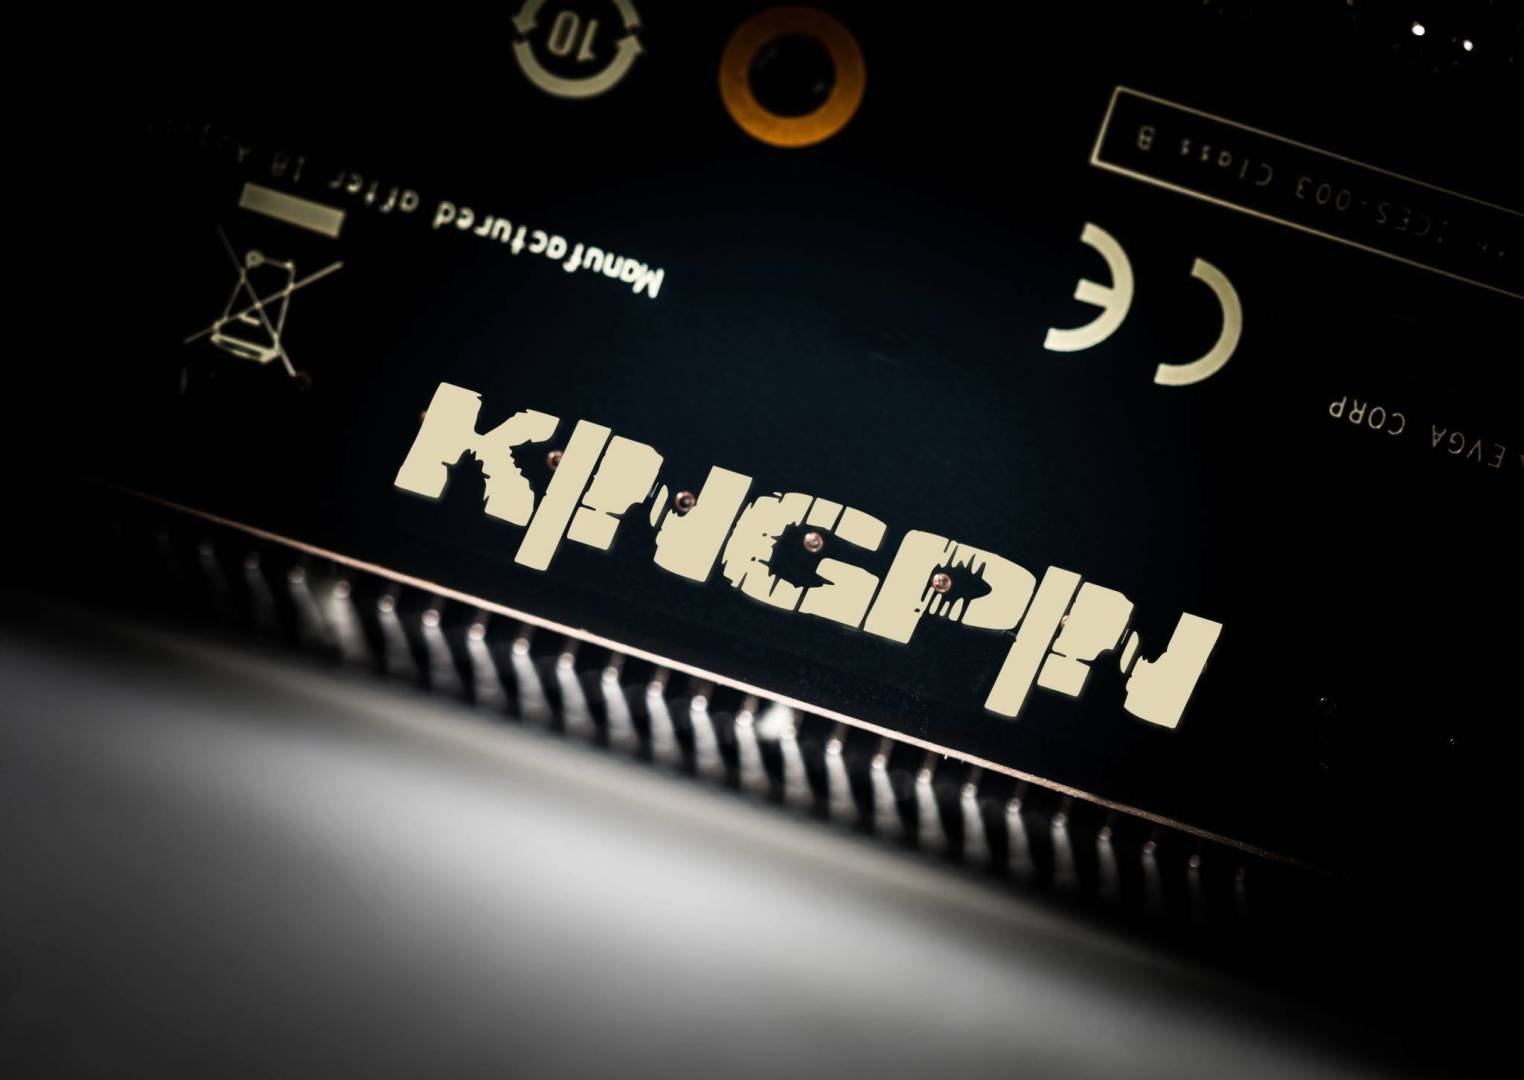 Immagine di EVGA, la RTX 2080 Ti Kingpin ha un display che mostra i consumi